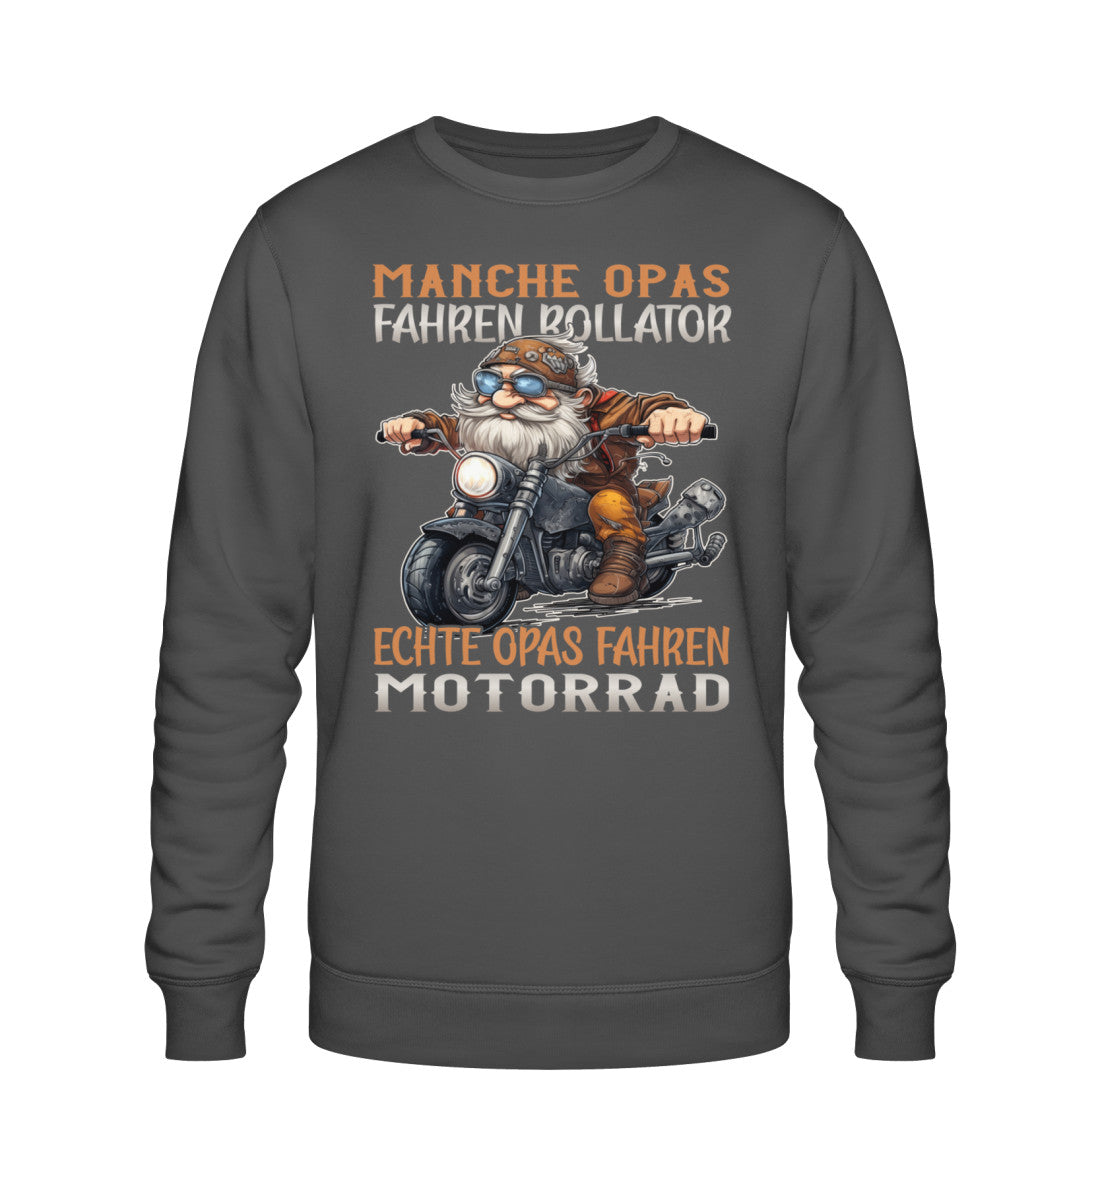 Ein Biker Sweatshirt für Motorradfahrer von Wingbikers mit dem Aufdruck, Manche Opas fahren Rollator - Echte Opas fahren Motorrad, in dunkelgrau.